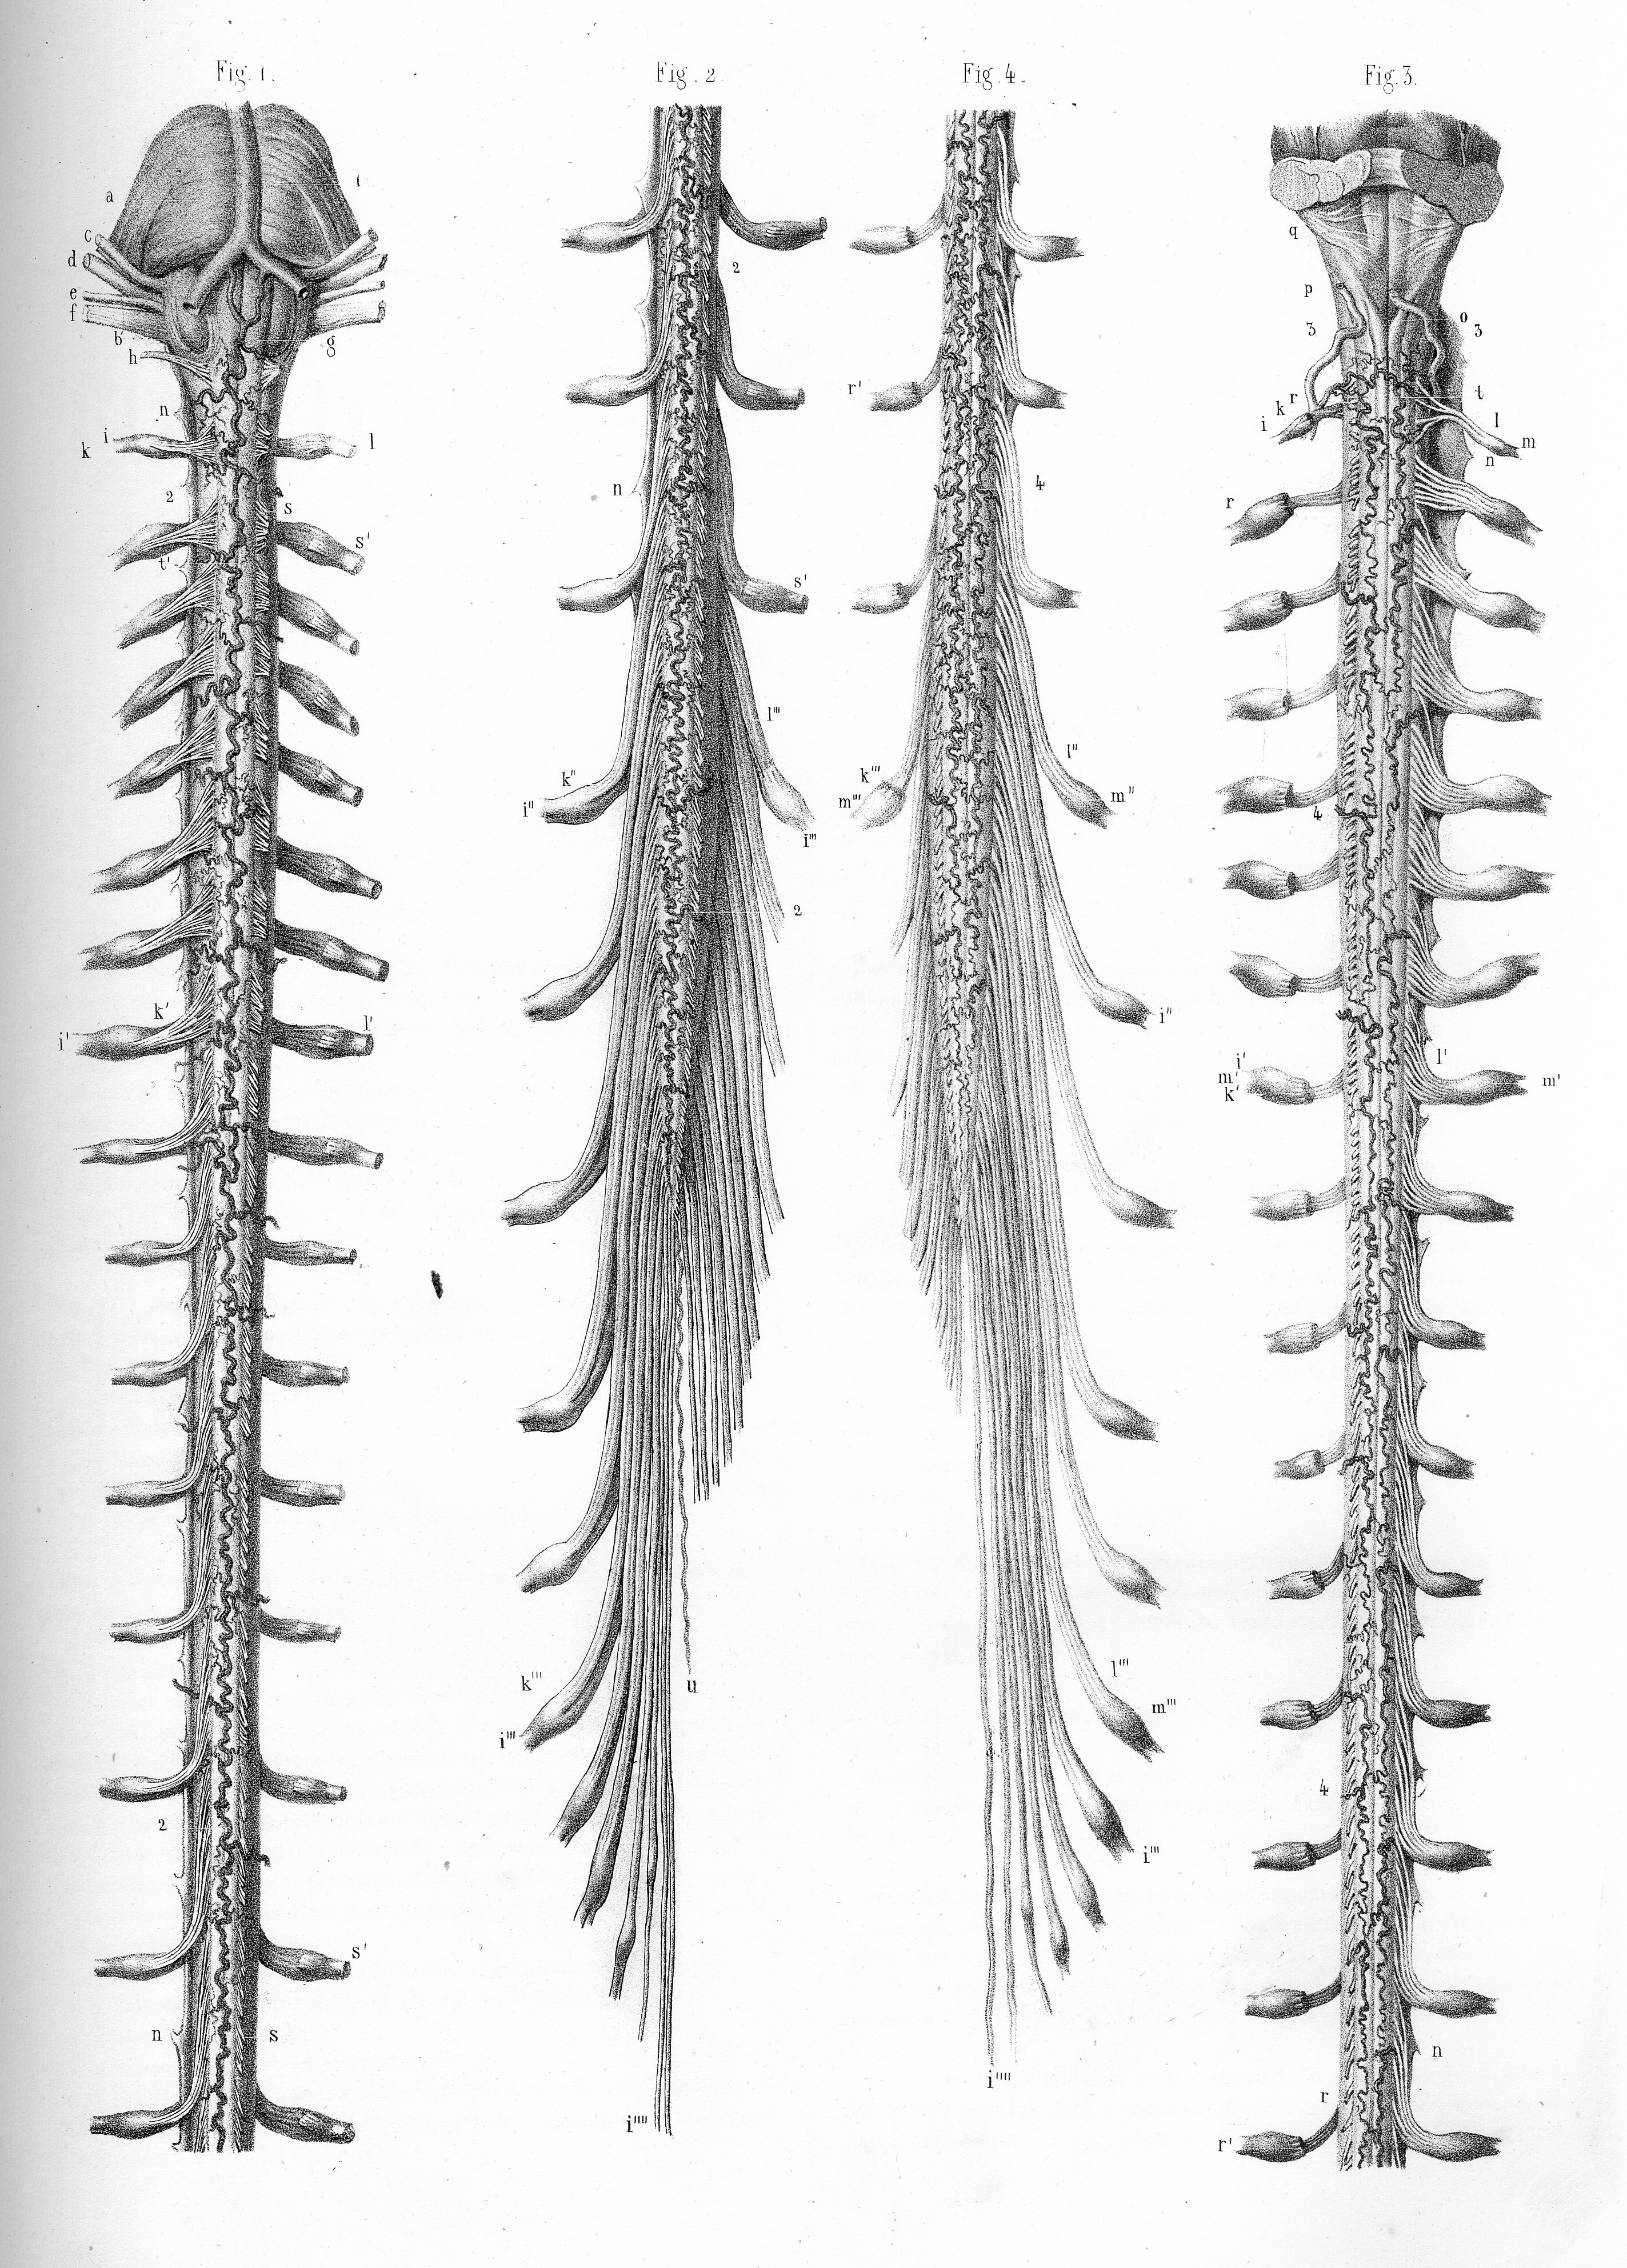 Spinal cord injury | ari.info | ari.info